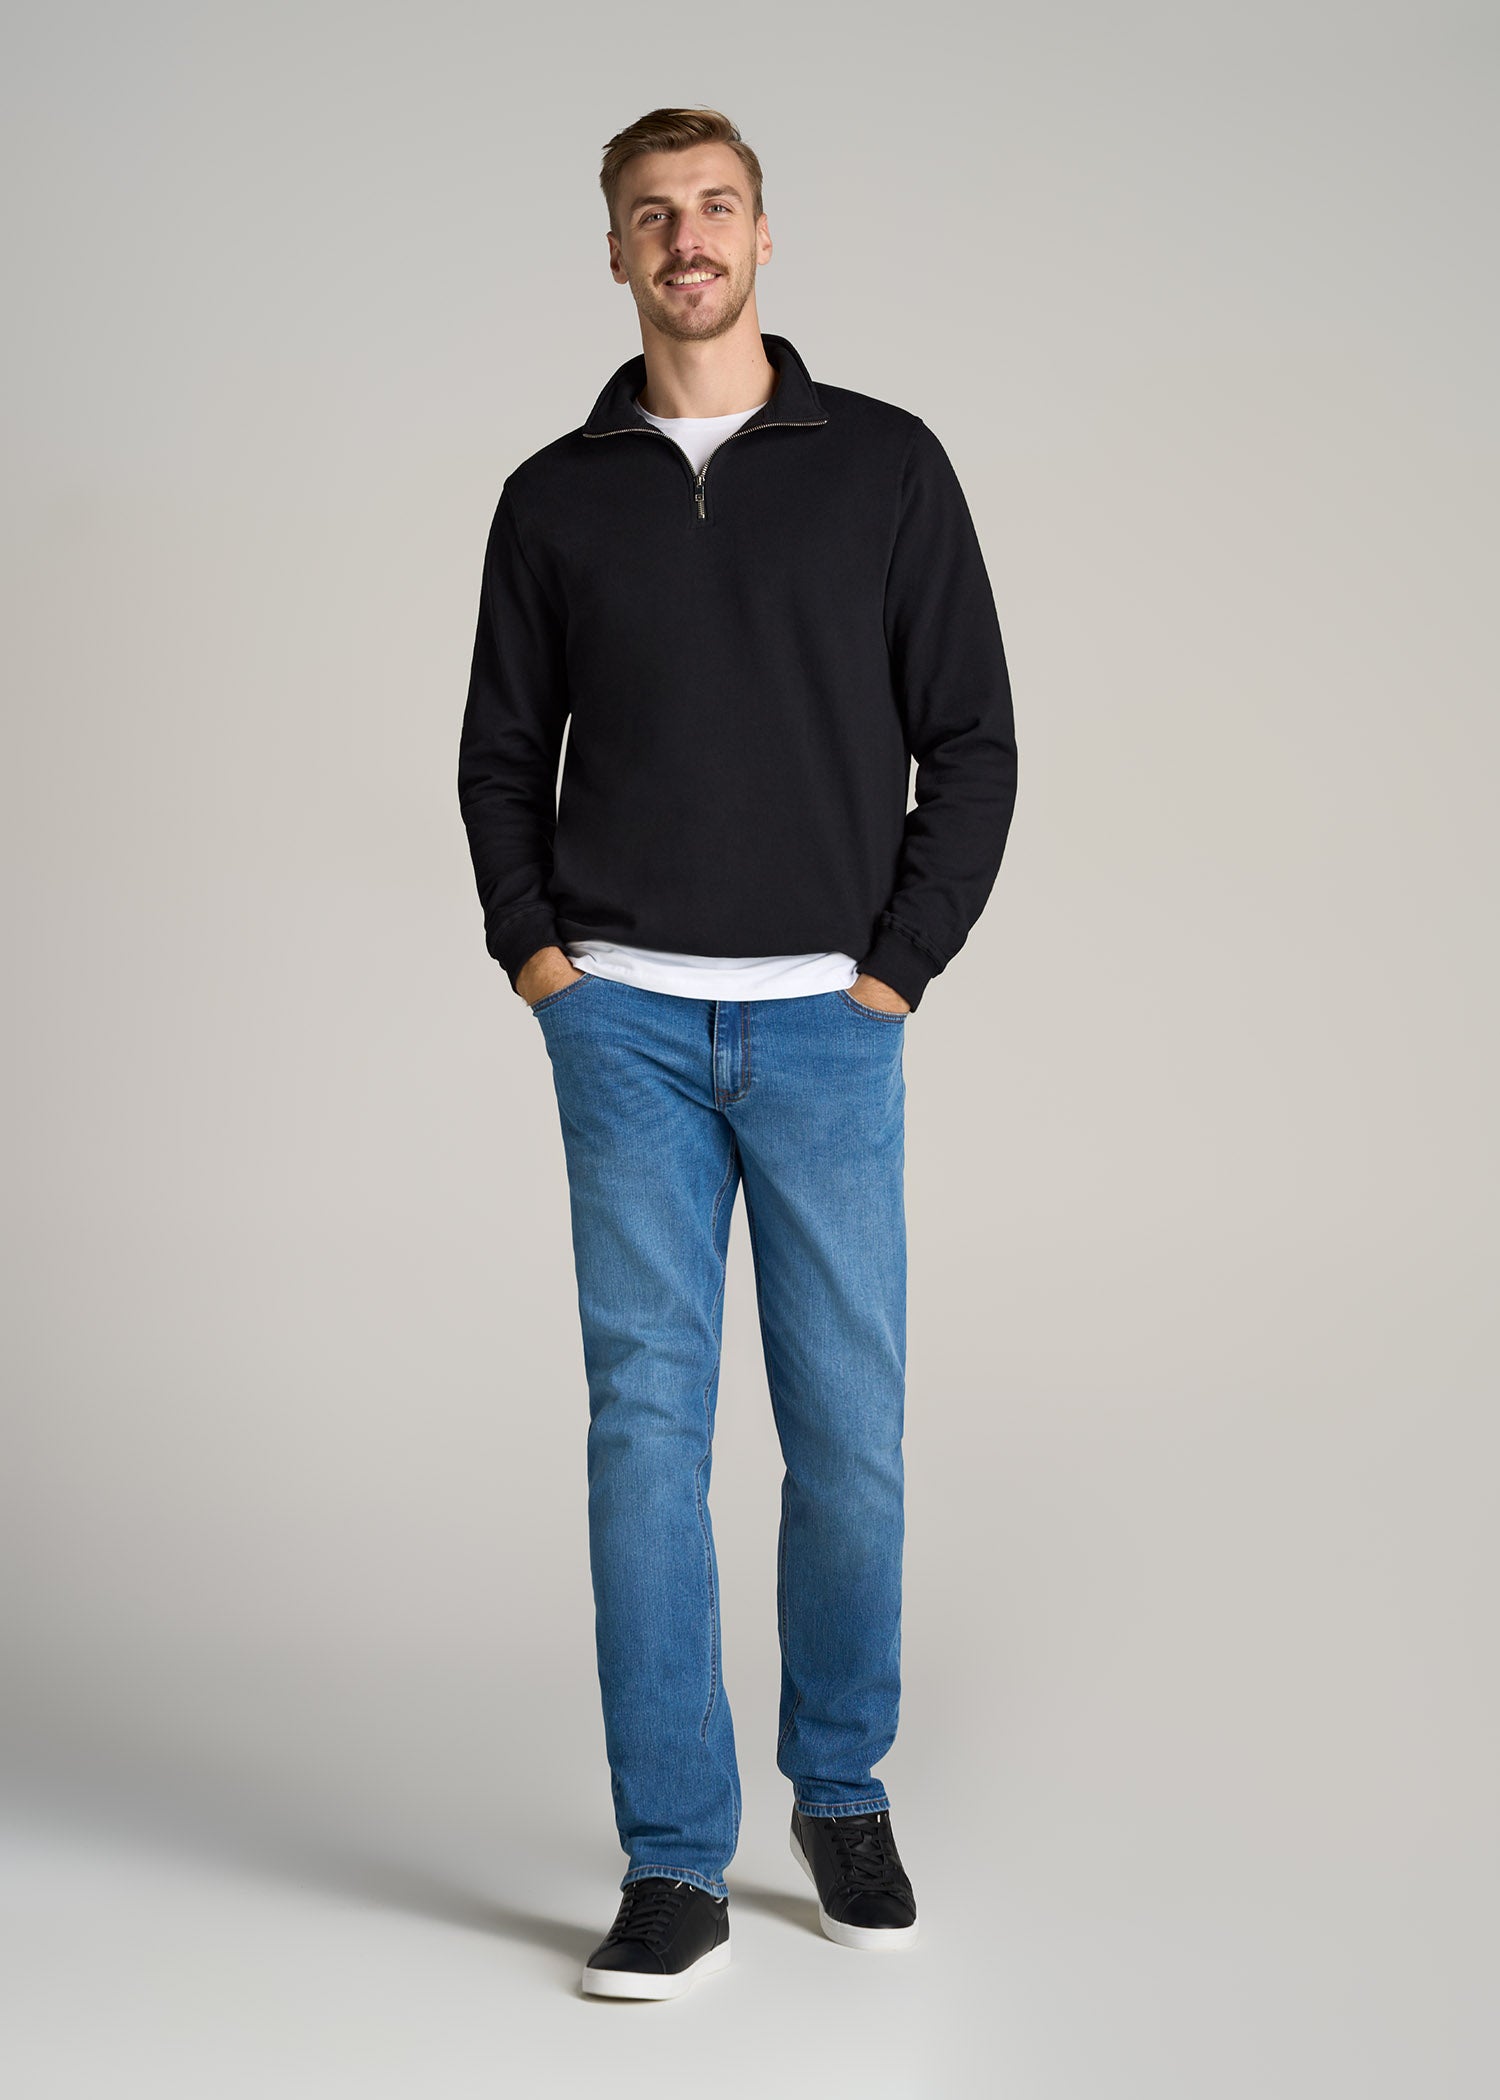 Quarter Zip Sweatshirt Men's: Tall Wearever Fleece Sweatshirt Black –  American Tall